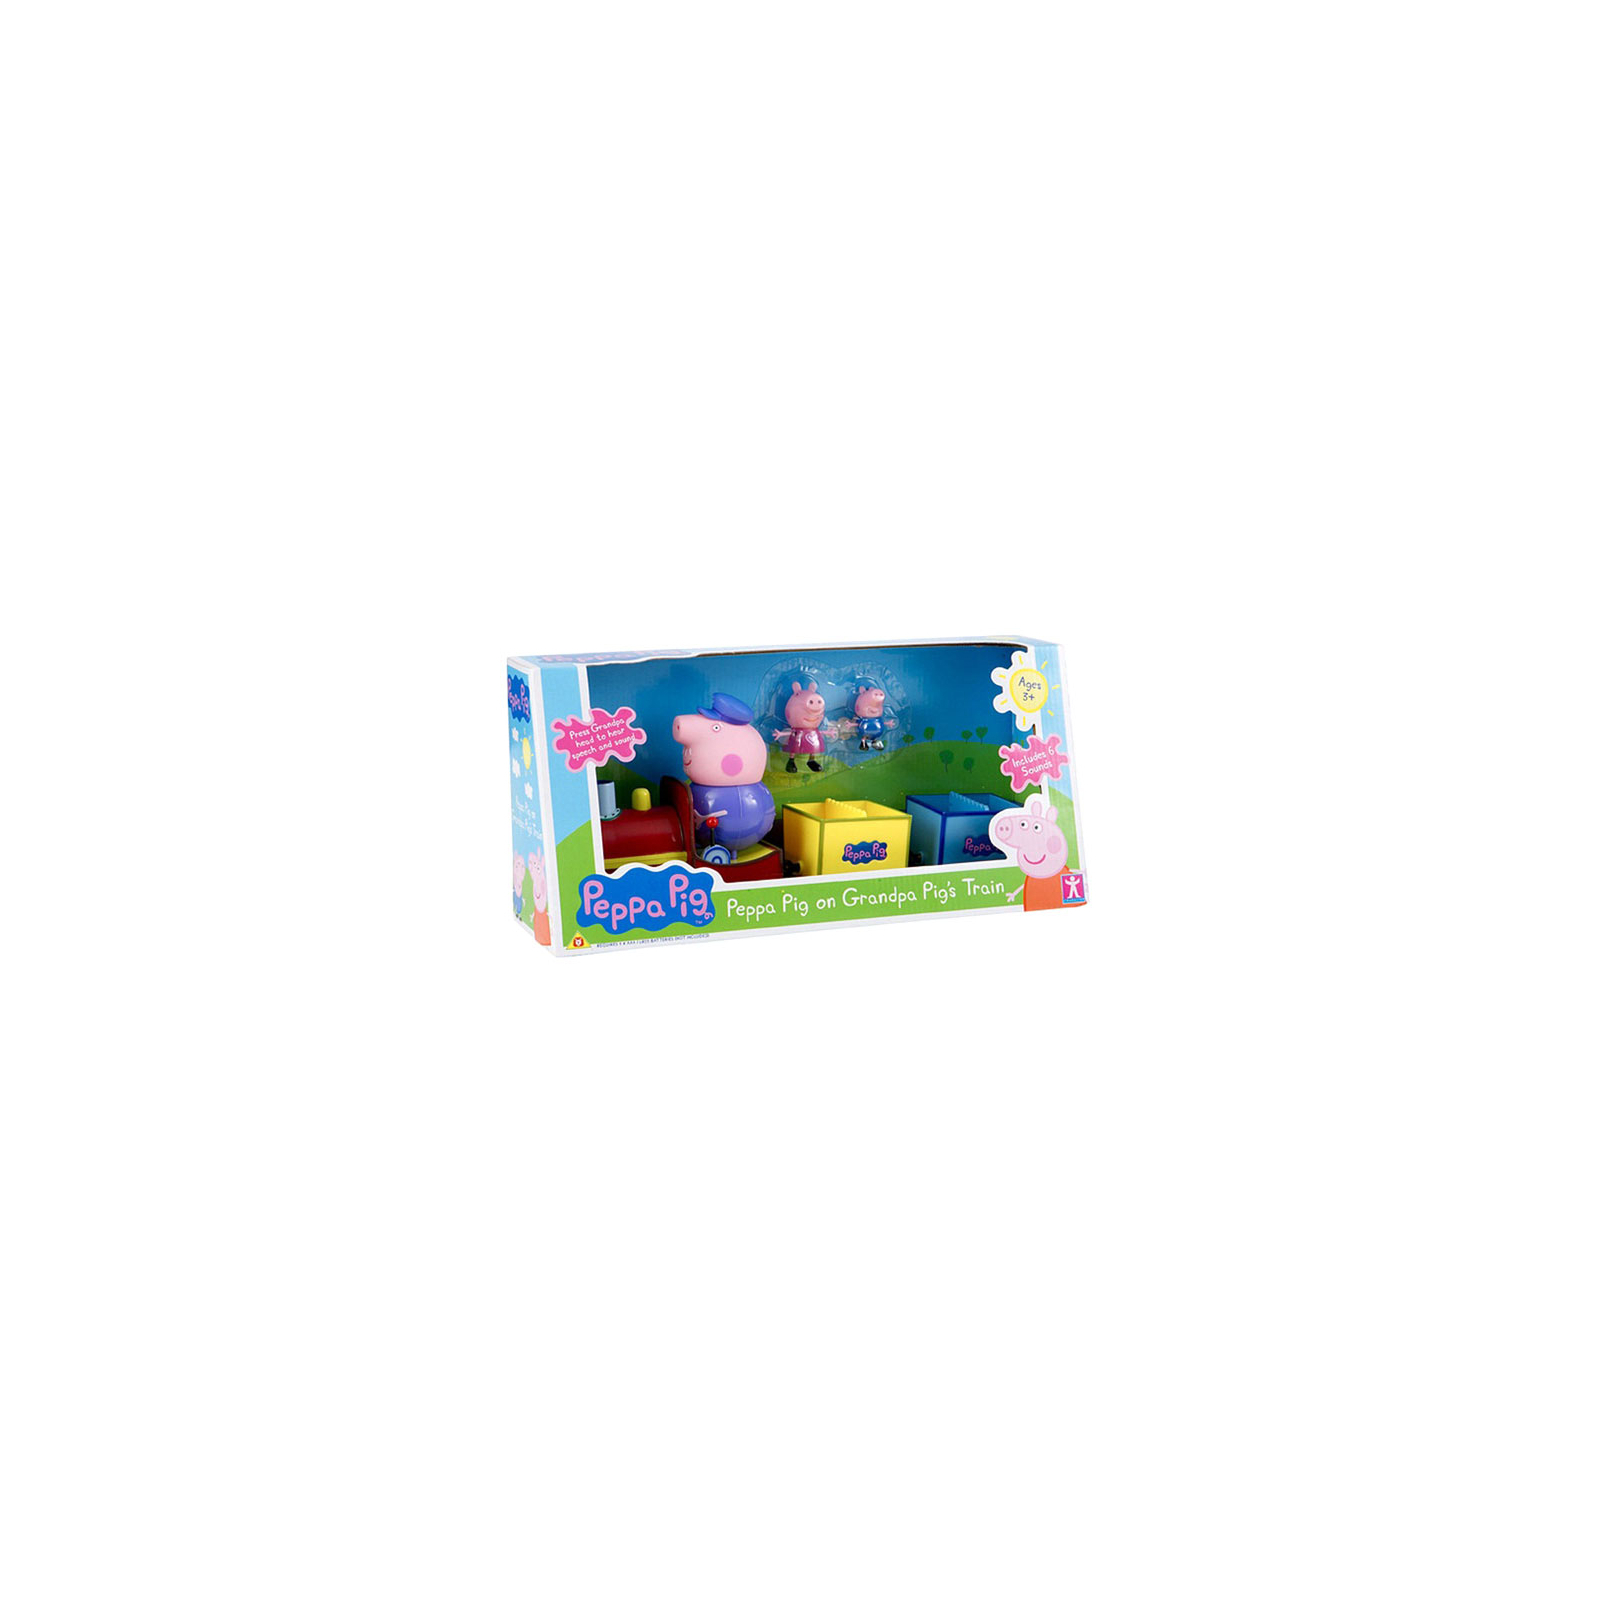 Игровой набор Peppa Pig Паровозик дедушки Пеппы (20829)